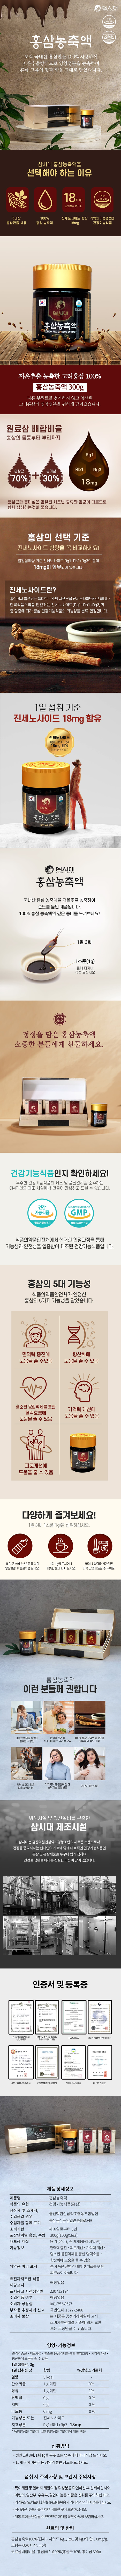 [โสมแดงเกาหลีสกัด] Korean Red Ginseng Extract 300g